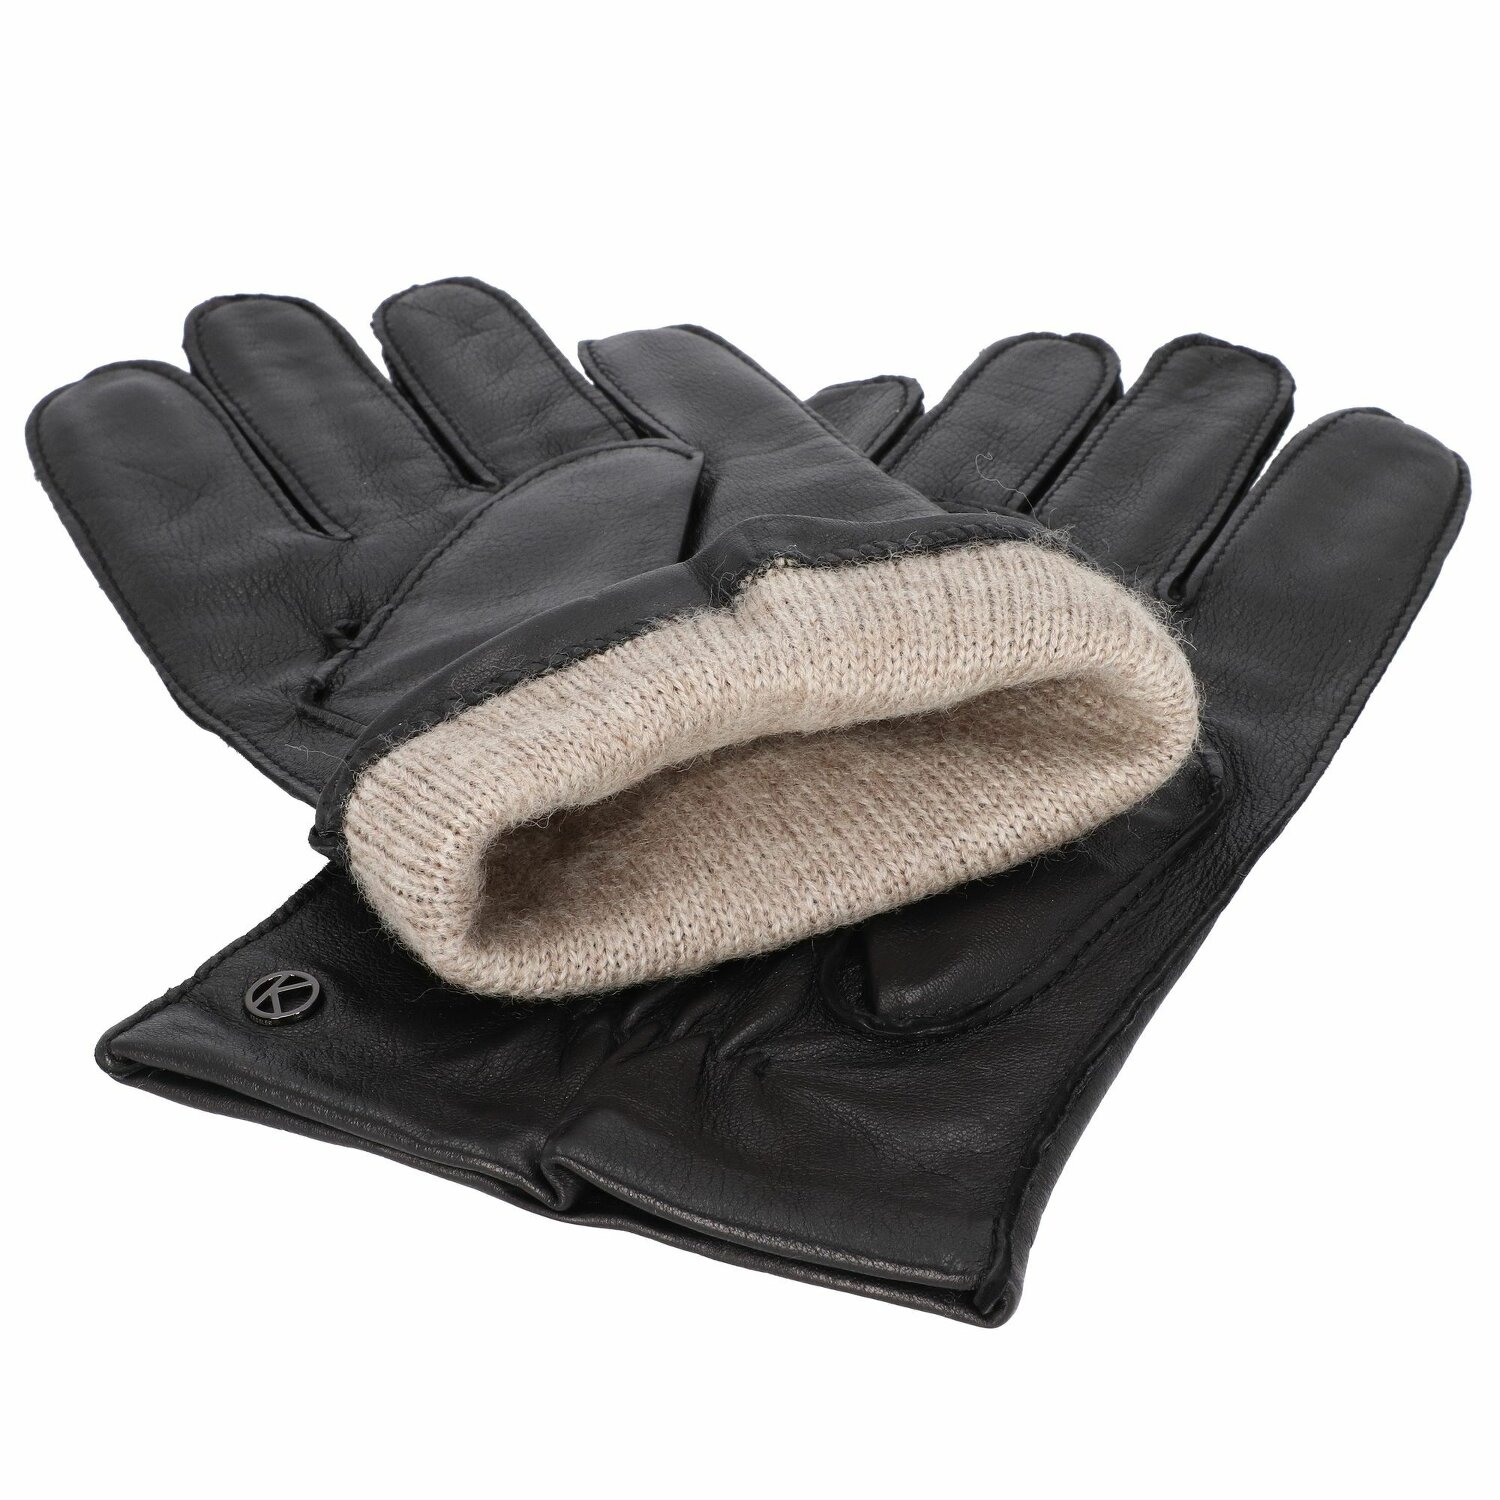 Verkaufspreis Kessler Paul Handschuhe Leder black 8,5 